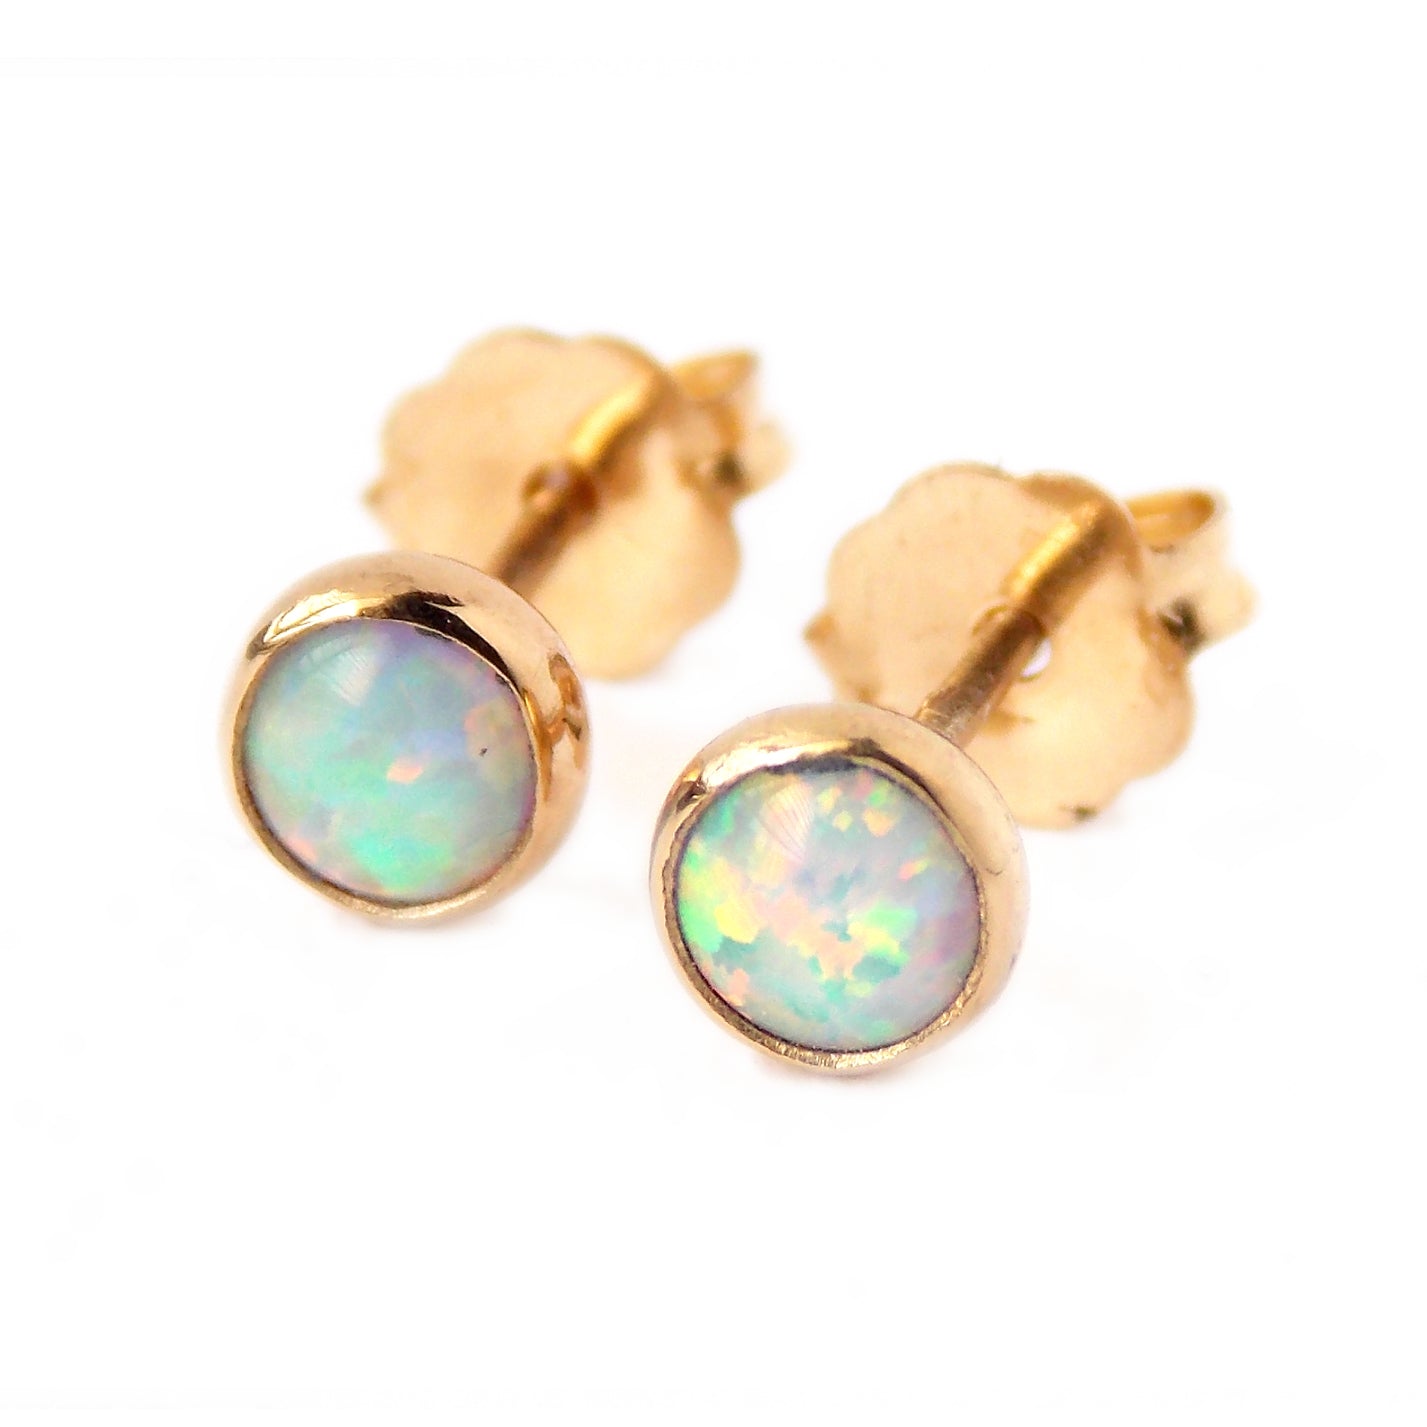 Opal Stud Earrings Stud Earrings Opal Jewelry Sterling Silver Earrings